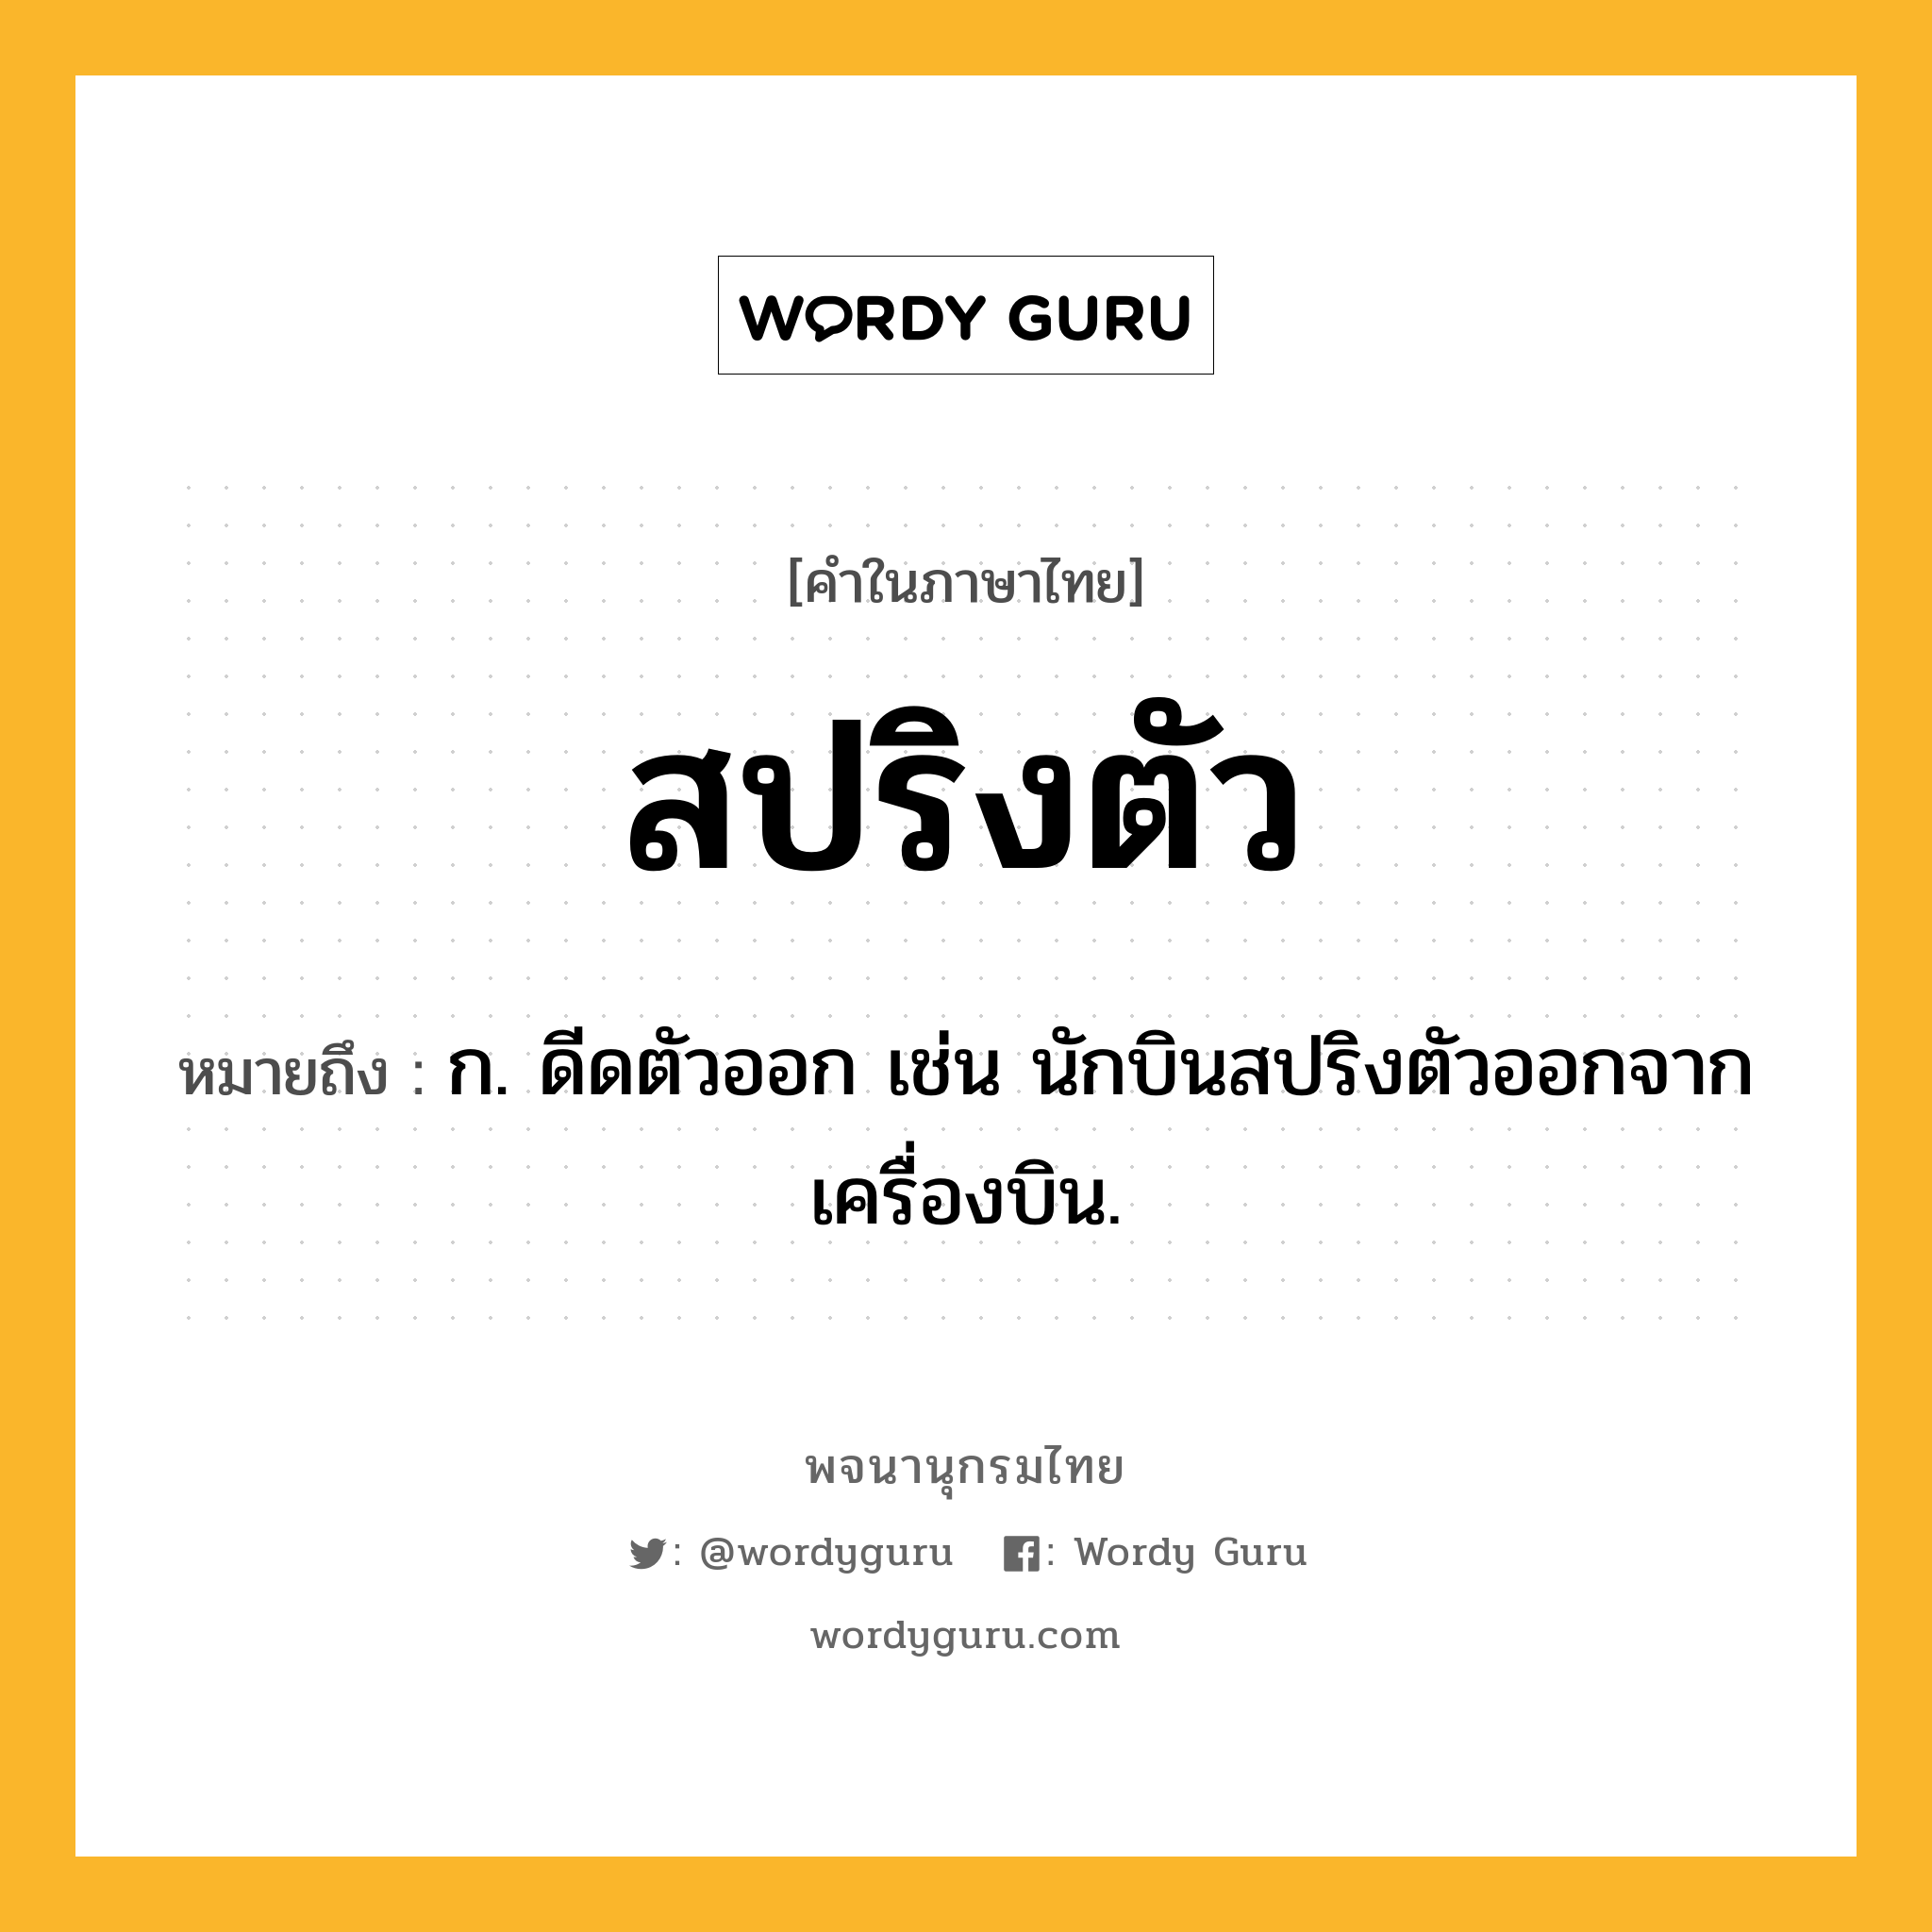 สปริงตัว ความหมาย หมายถึงอะไร?, คำในภาษาไทย สปริงตัว หมายถึง ก. ดีดตัวออก เช่น นักบินสปริงตัวออกจากเครื่องบิน.